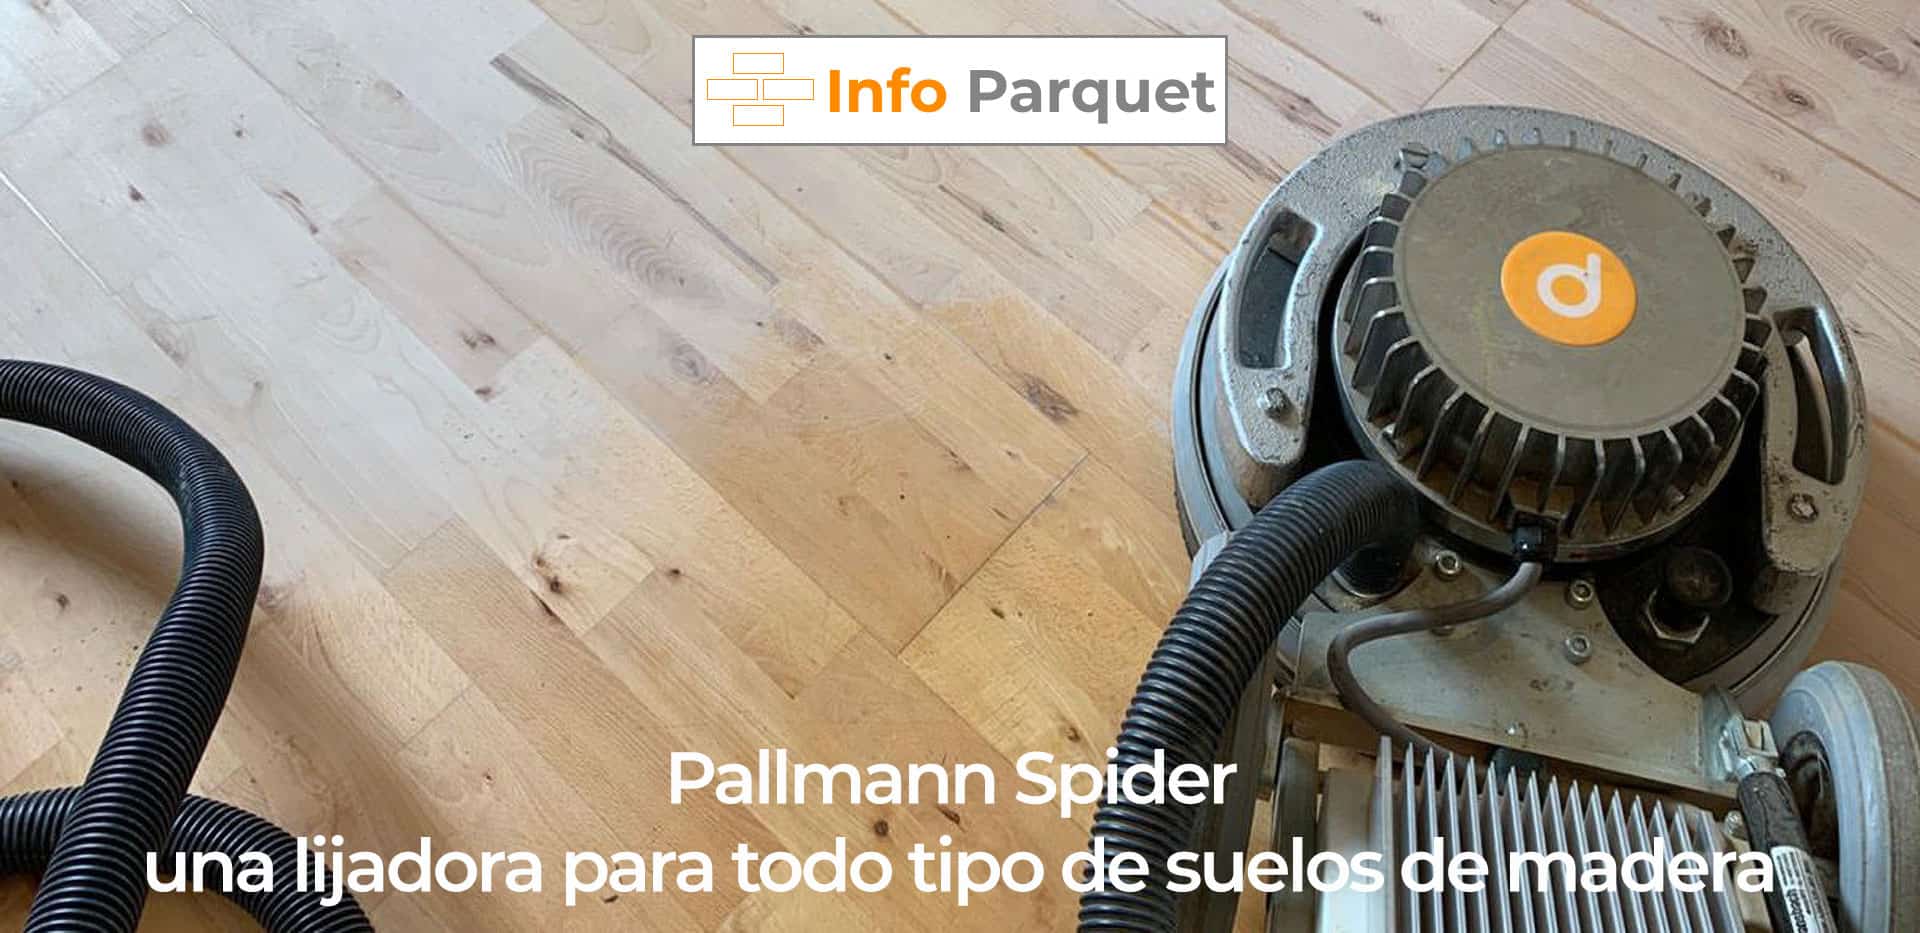 tengo sueño florero Drama Pallmann Spider una lijadora para todo tipo de suelos de madera - Info  Parquet